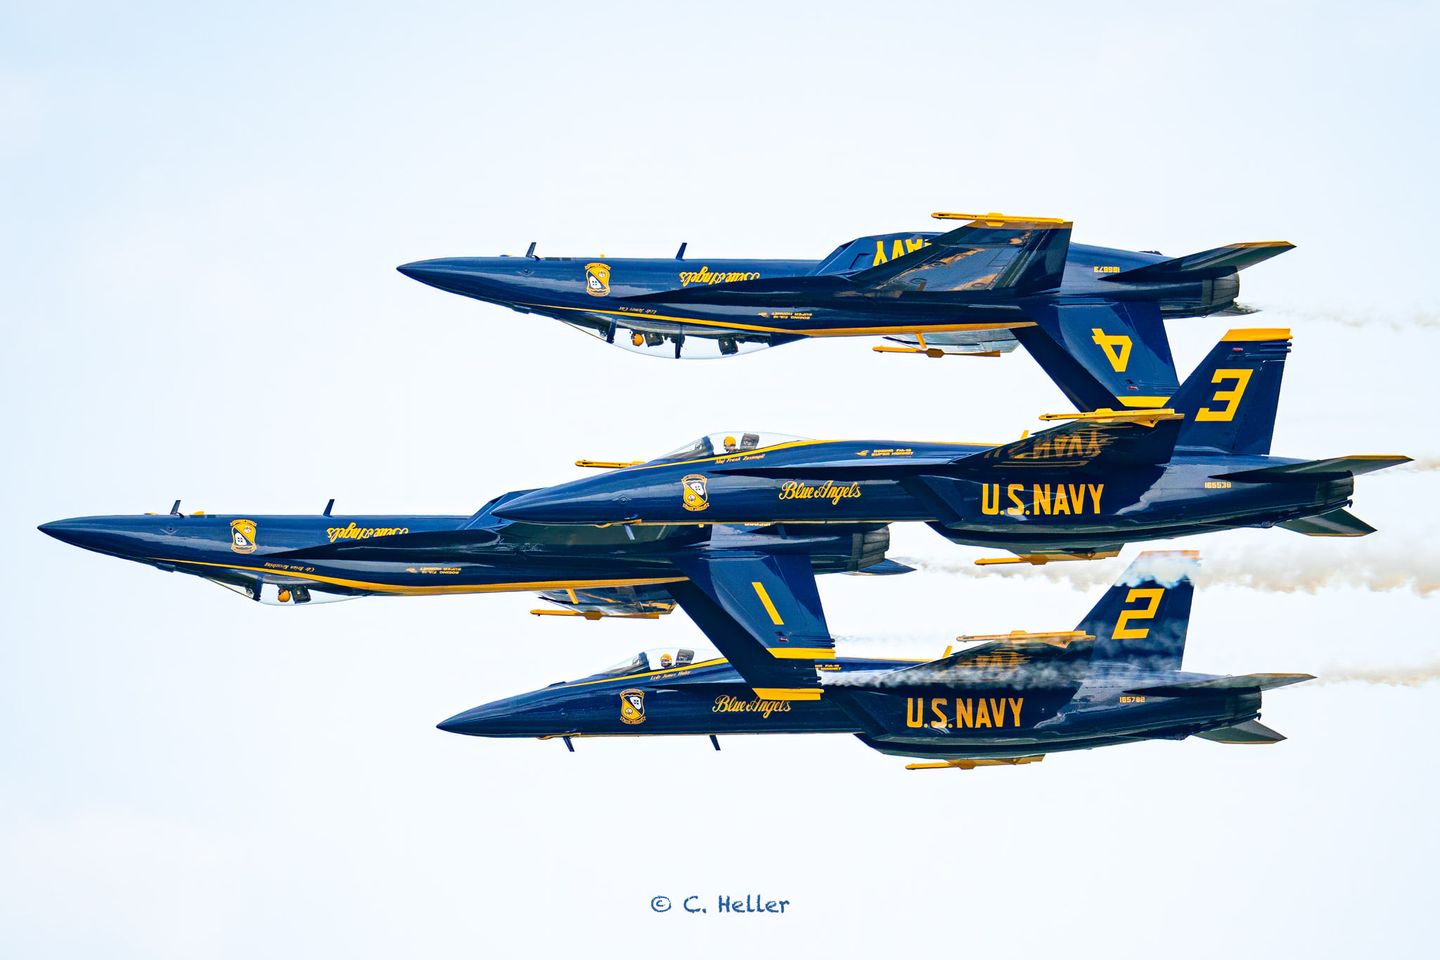 U. S. Navy Blue Angels performing